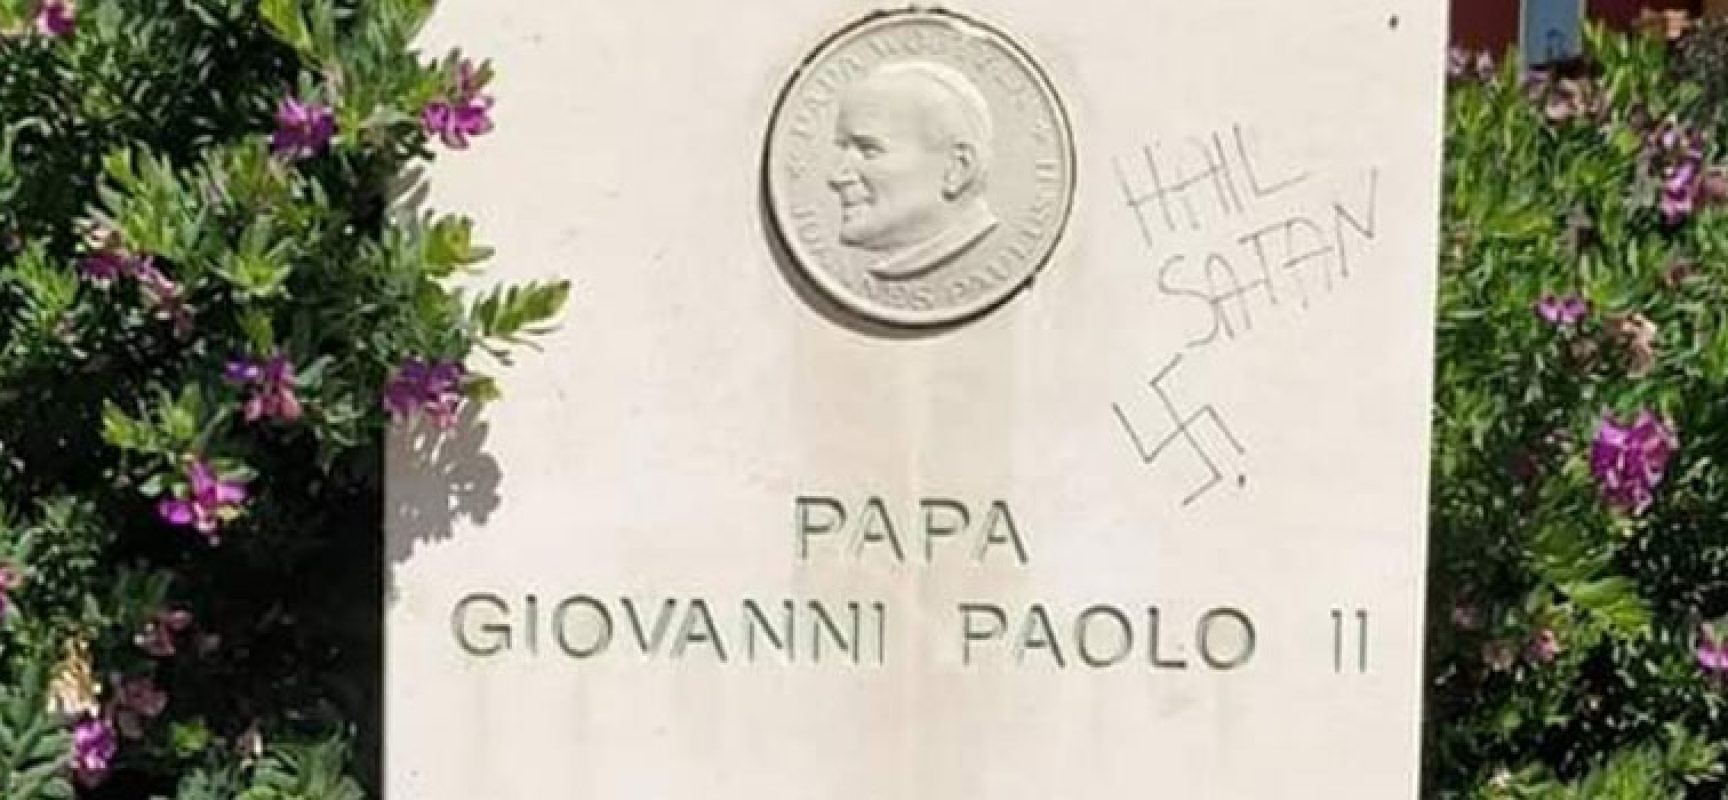 Atto vandalico alla stele in memoria di Giovanni Paolo II